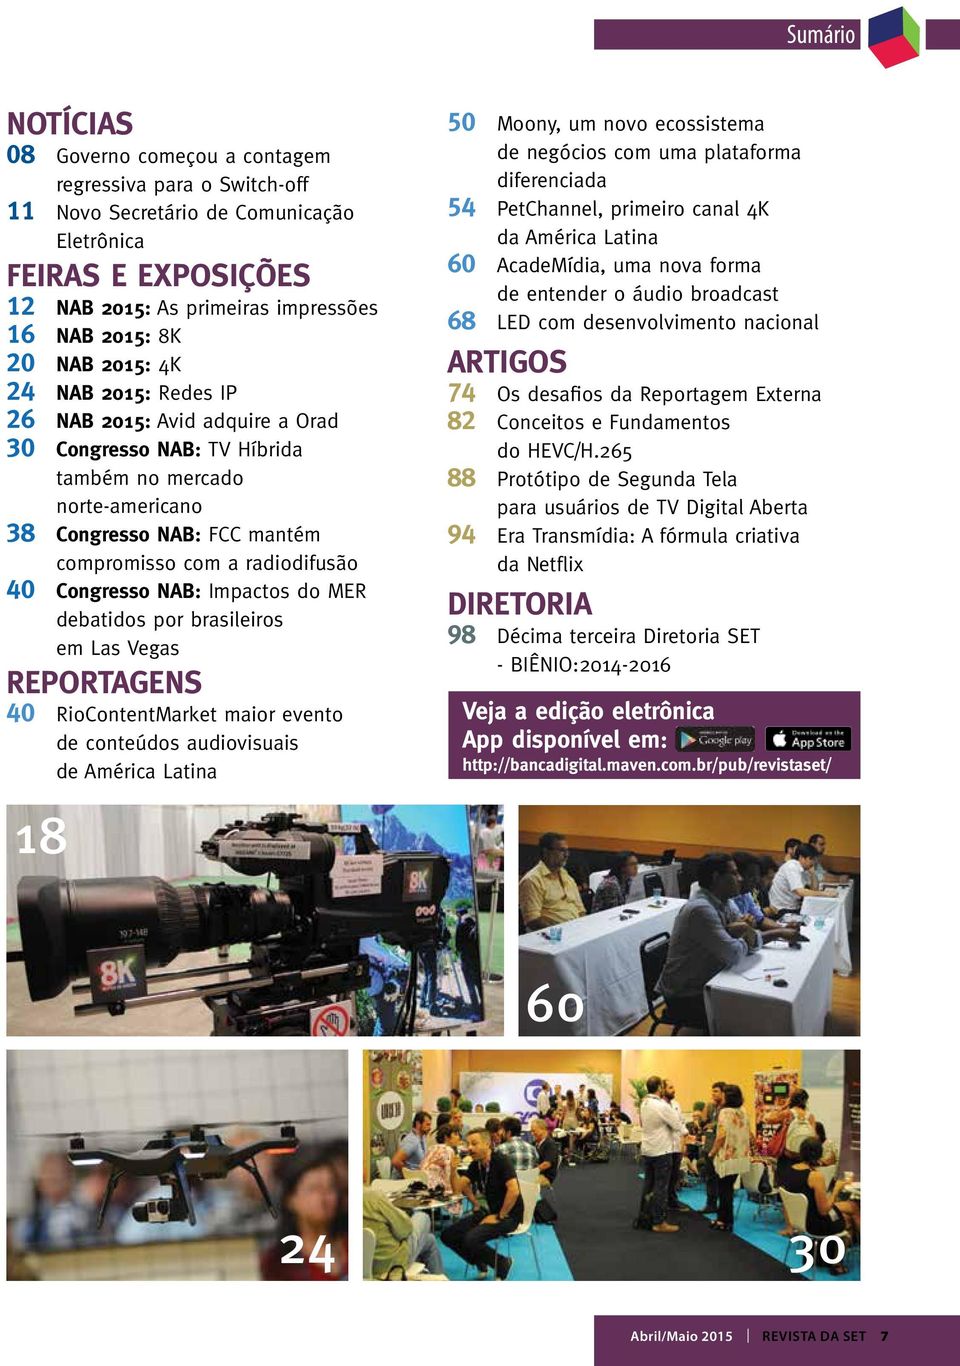 Congresso NAB: Impactos do MER debatidos por brasileiros em Las Vegas REPORTAGENS 40 RioContentMarket maior evento de conteúdos audiovisuais de América Latina 50 Moony, um novo ecossistema de